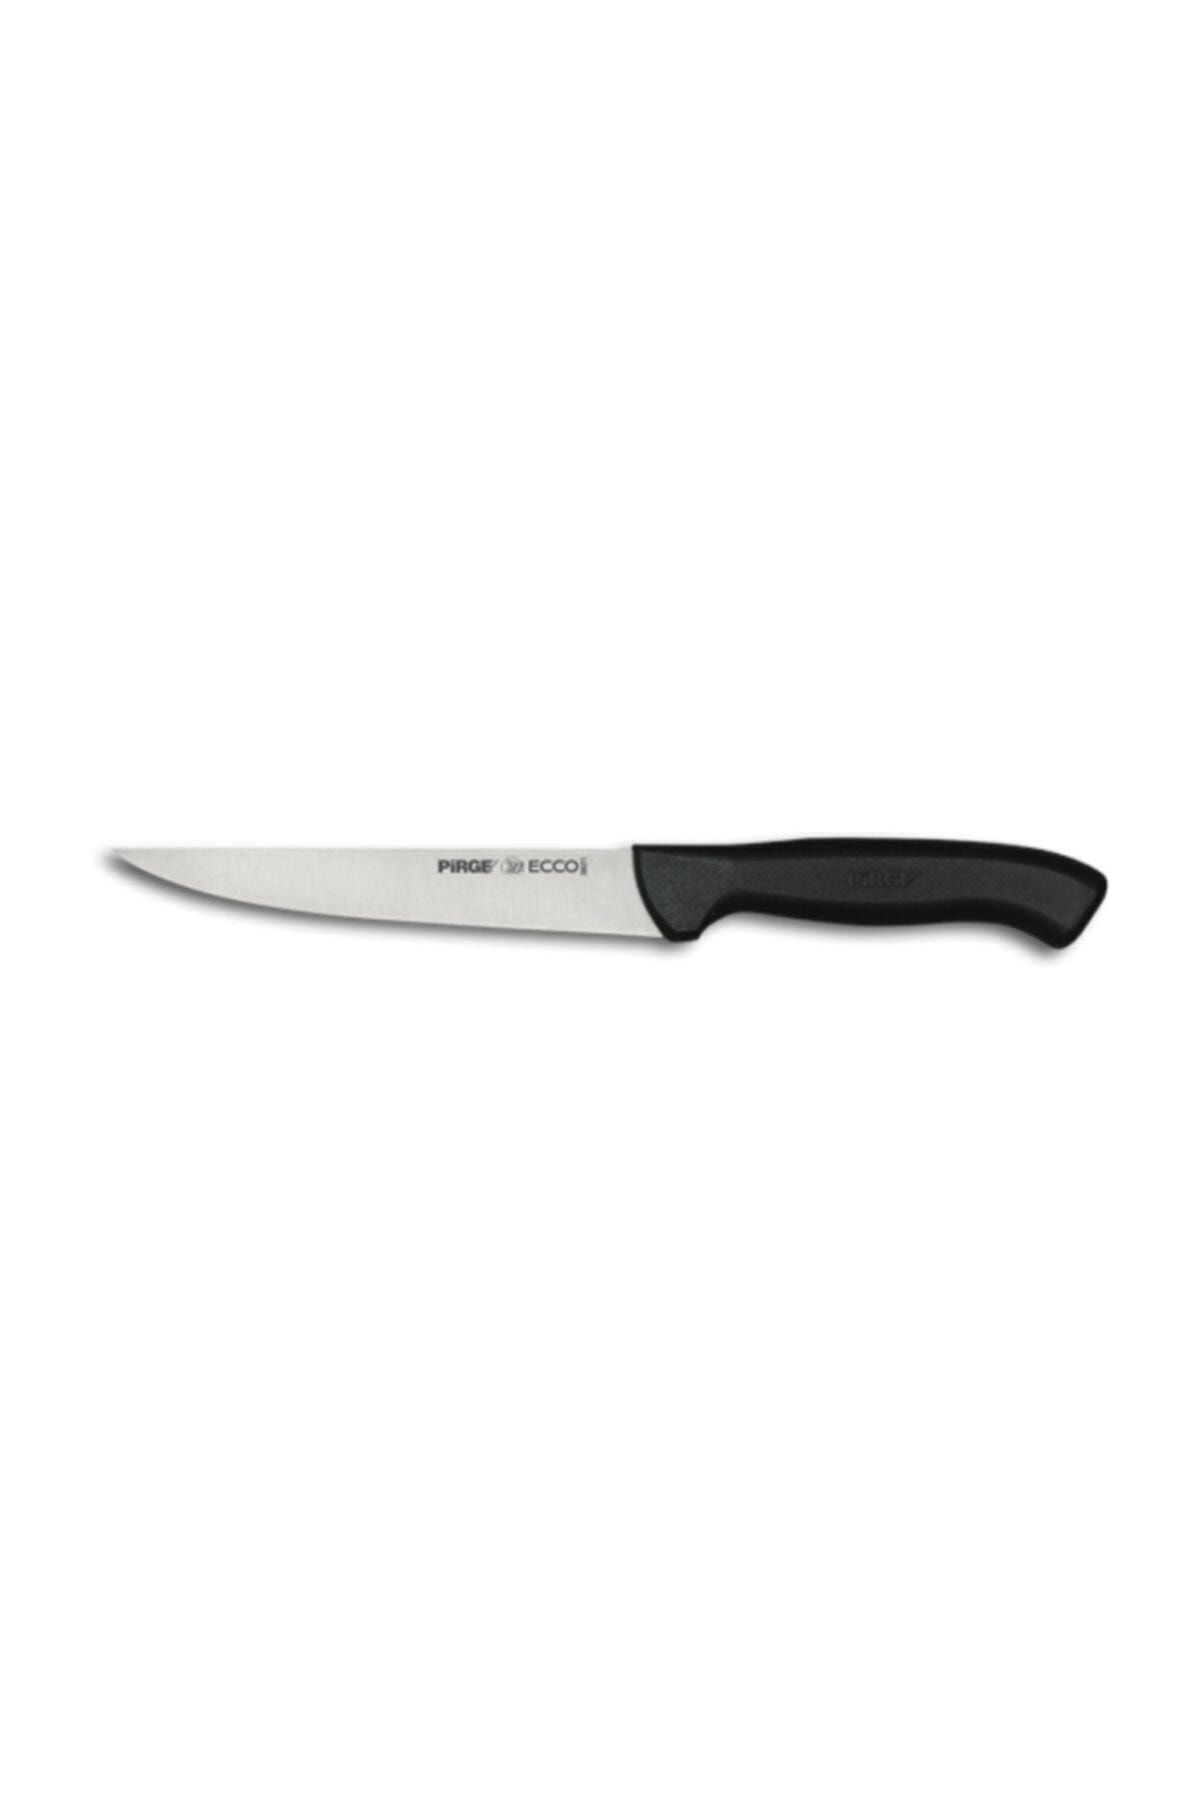 Pirge Ecco Peynir Bıçağı 15,5cm 38071